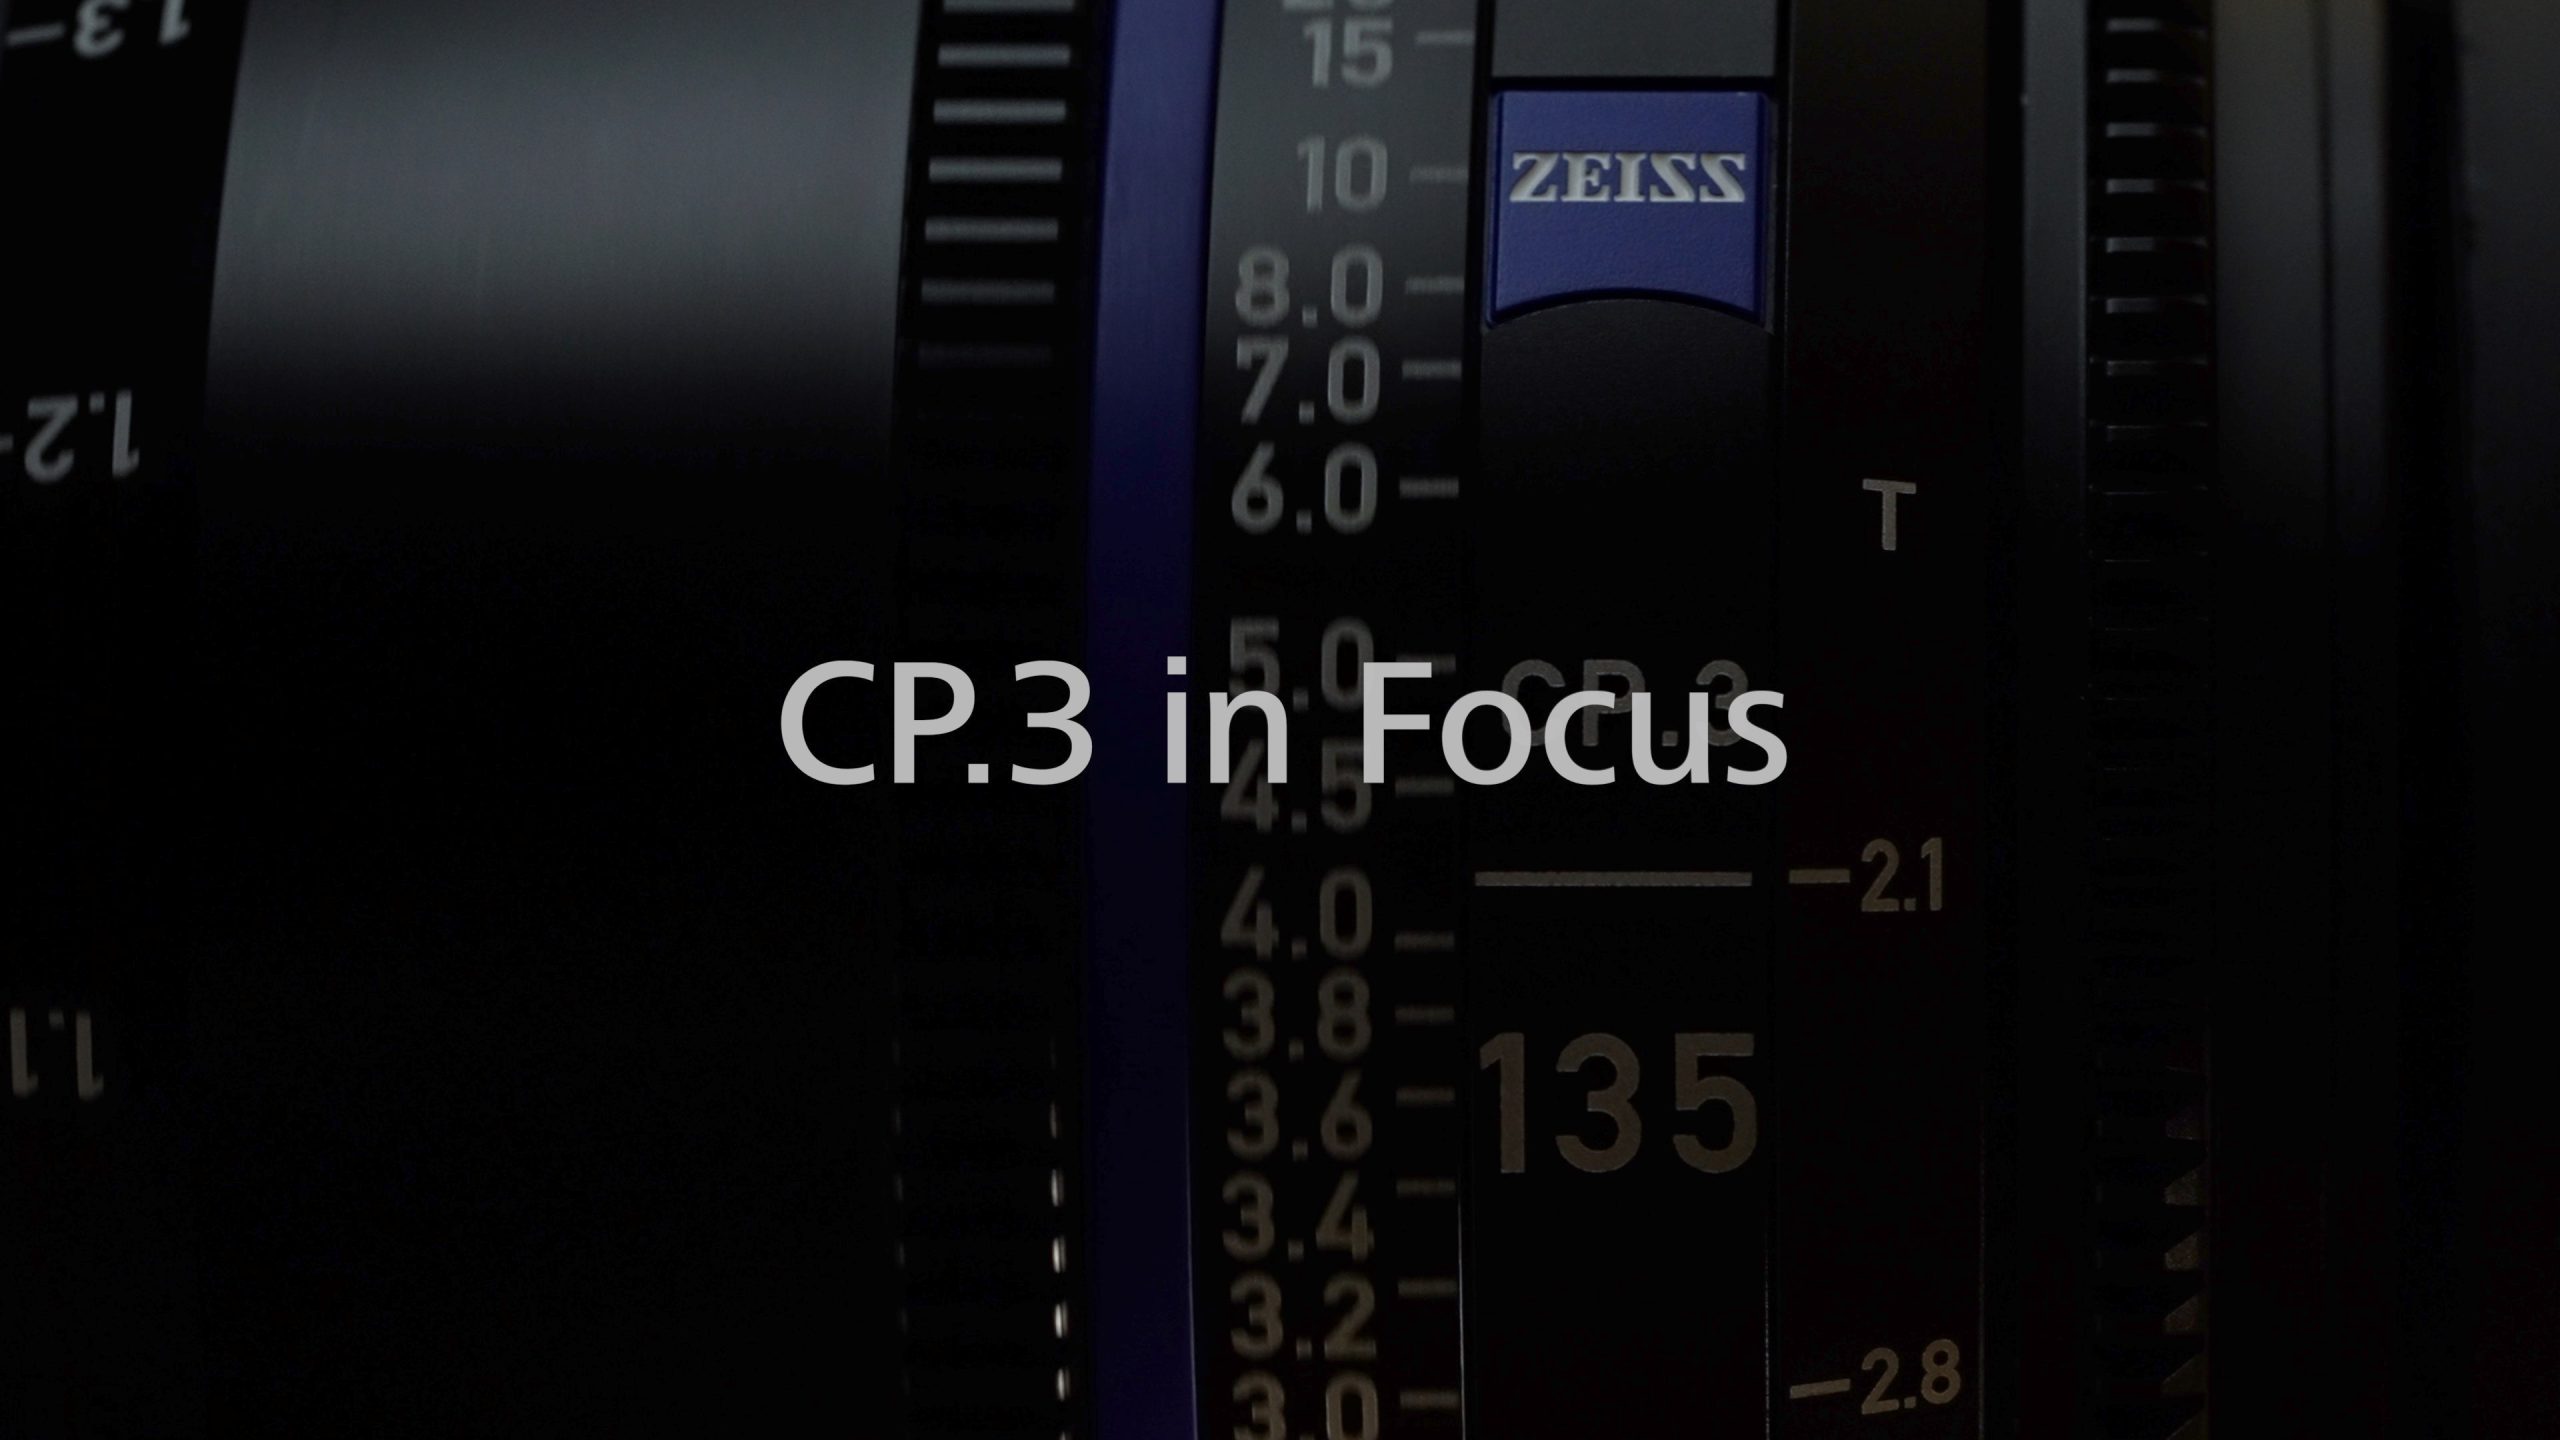 ZEISS CP.3 -レンタル会社の視点から – 本多正樹氏 / ナックレンタル　を撮影いたしました